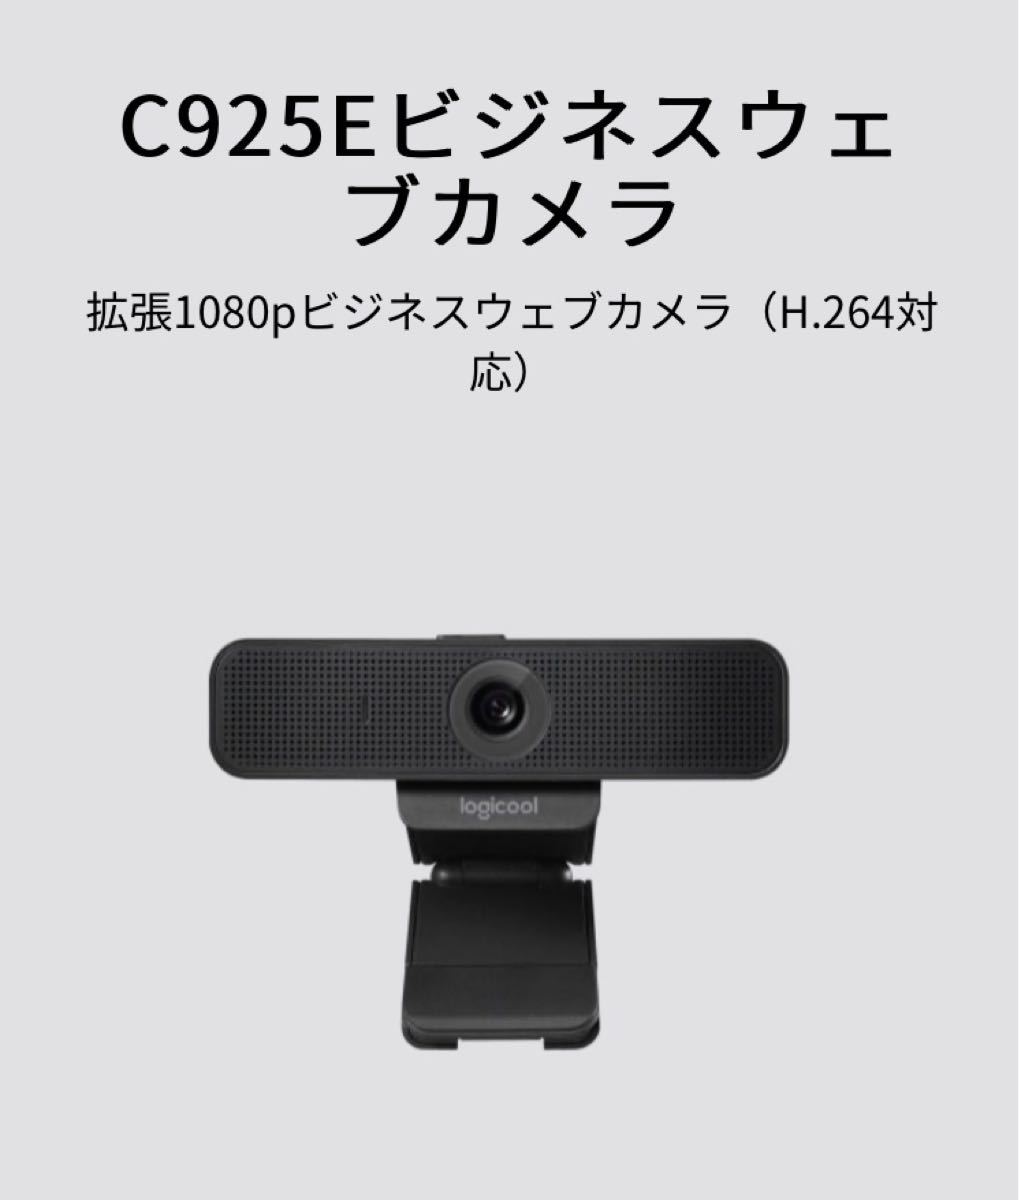 ロジクール ウェブカメラ logicool C925e 1080p ビジネスウェブカメラ 新品